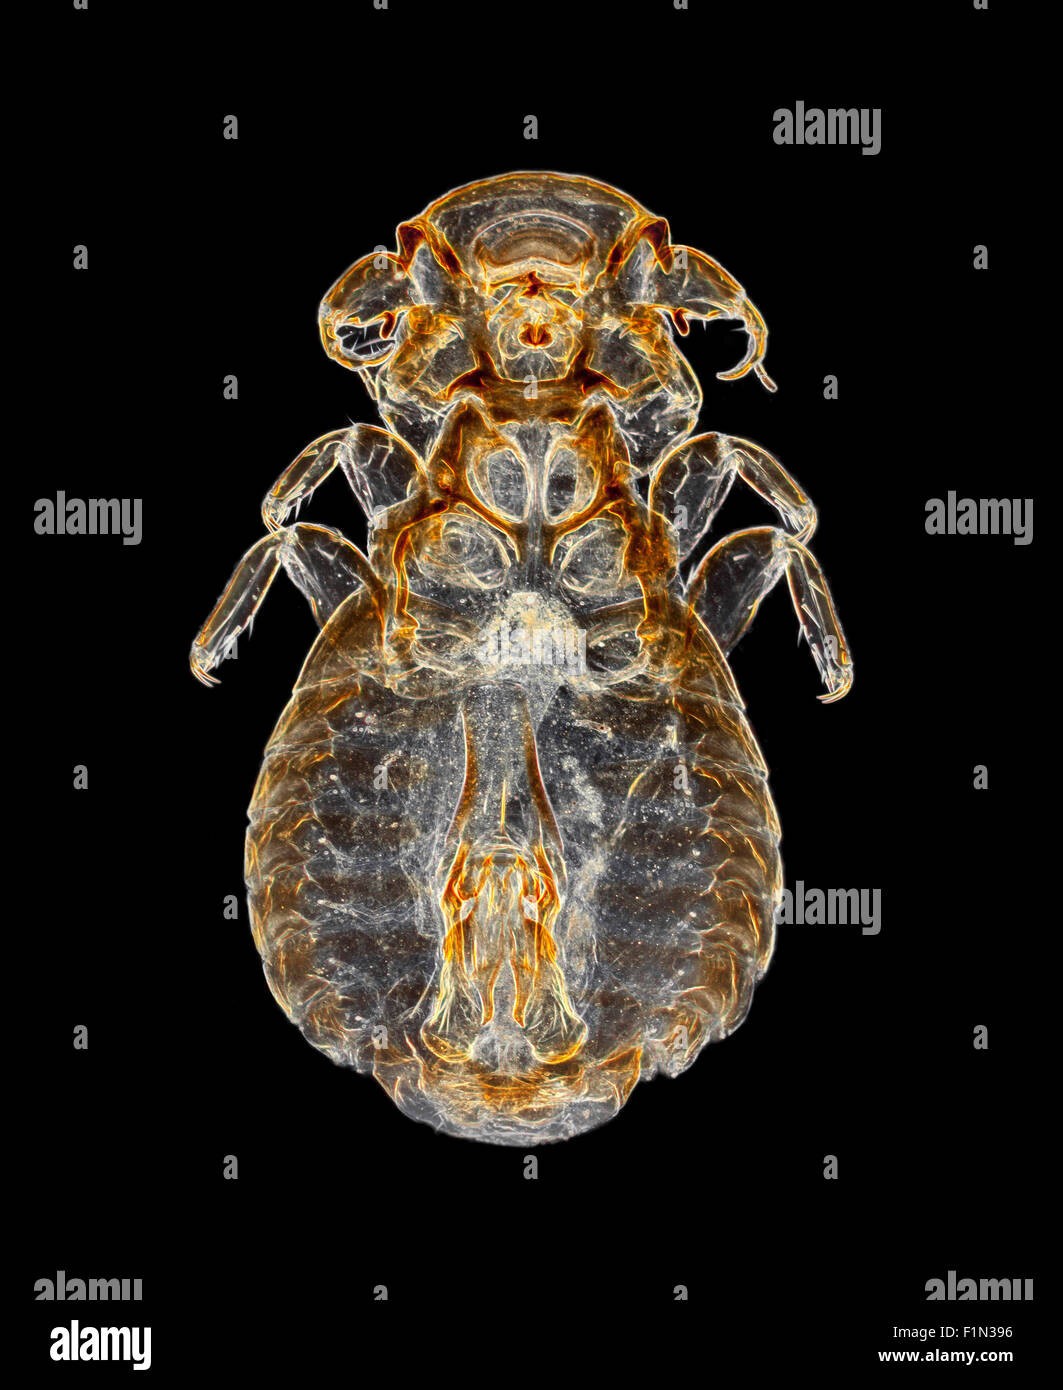 Ekto-Parasiten Laus von einem Pfau, Dunkelfeld Mikrophotographie, aus einer Folie von Amos Topping, einem renommierten Dia-Aufbereiter & mounter Stockfoto